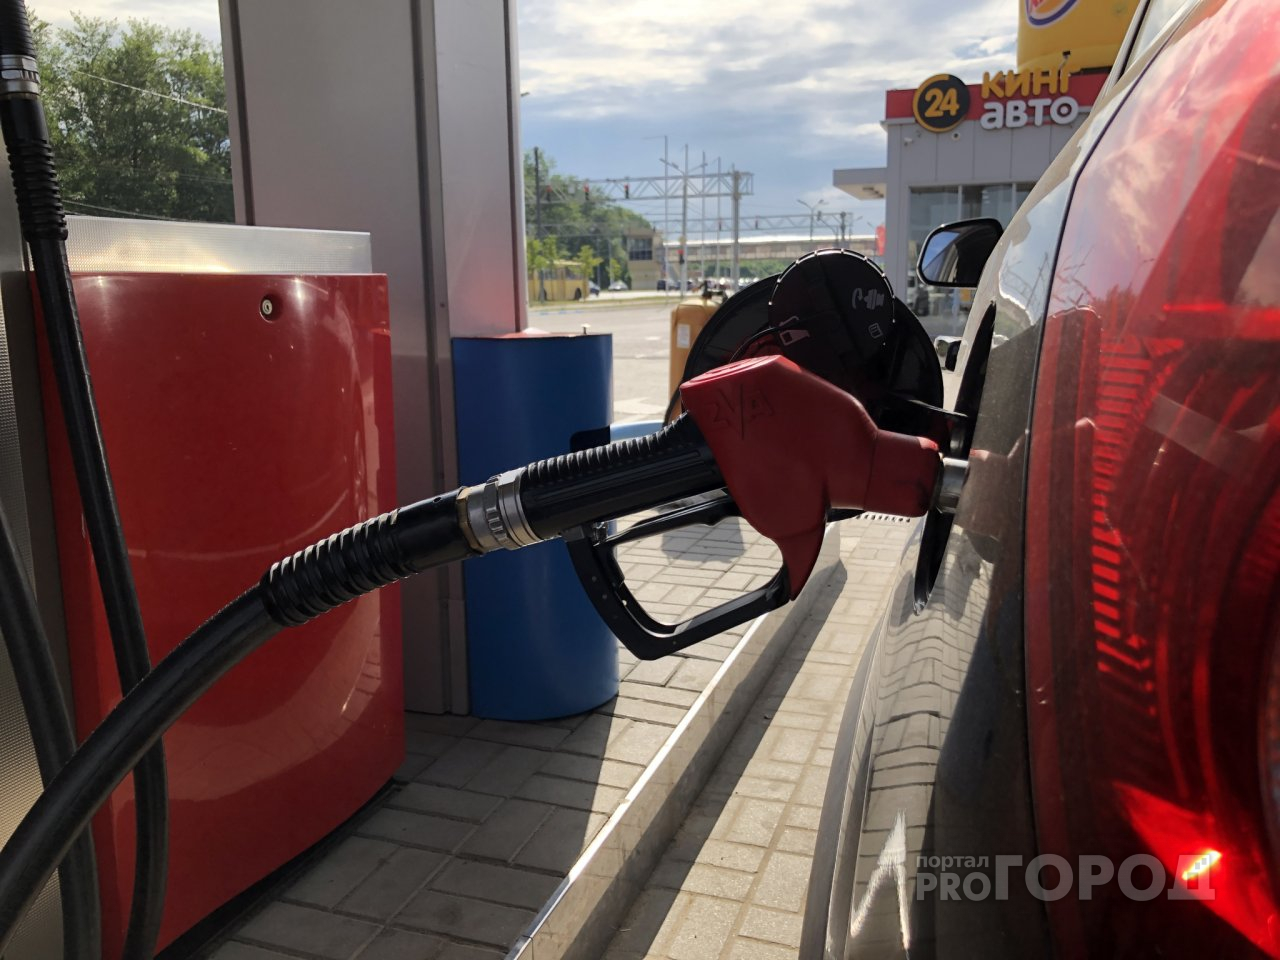 Как на дрожжах: в Йошкар-Оле вновь выросли цены на бензин